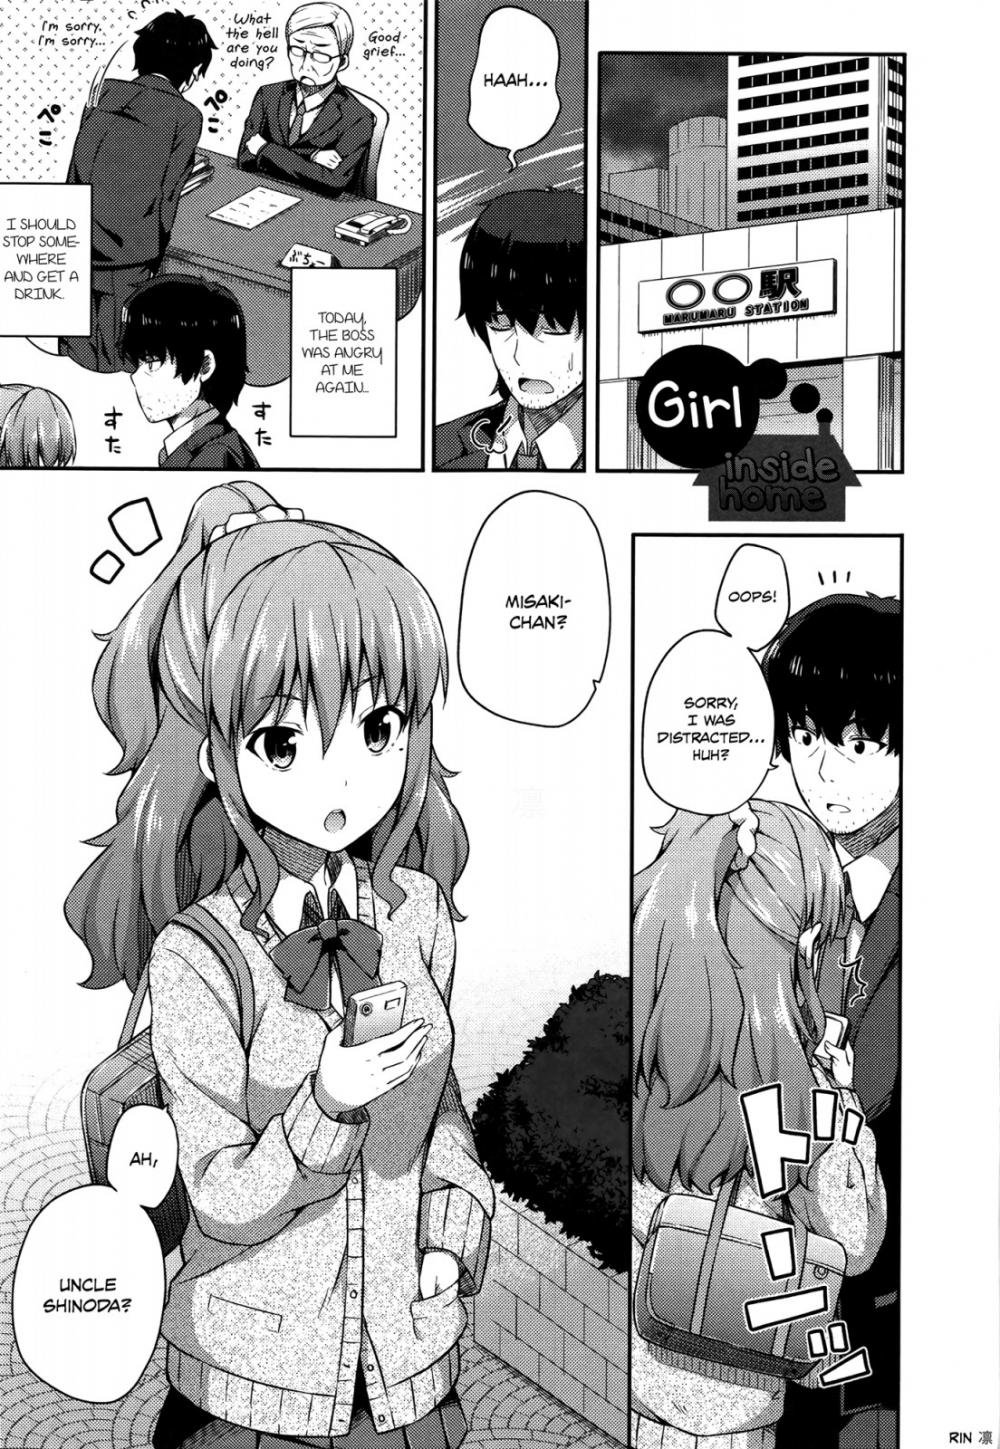 Hentai Manga Comic-Girl Inside Home-Read-1